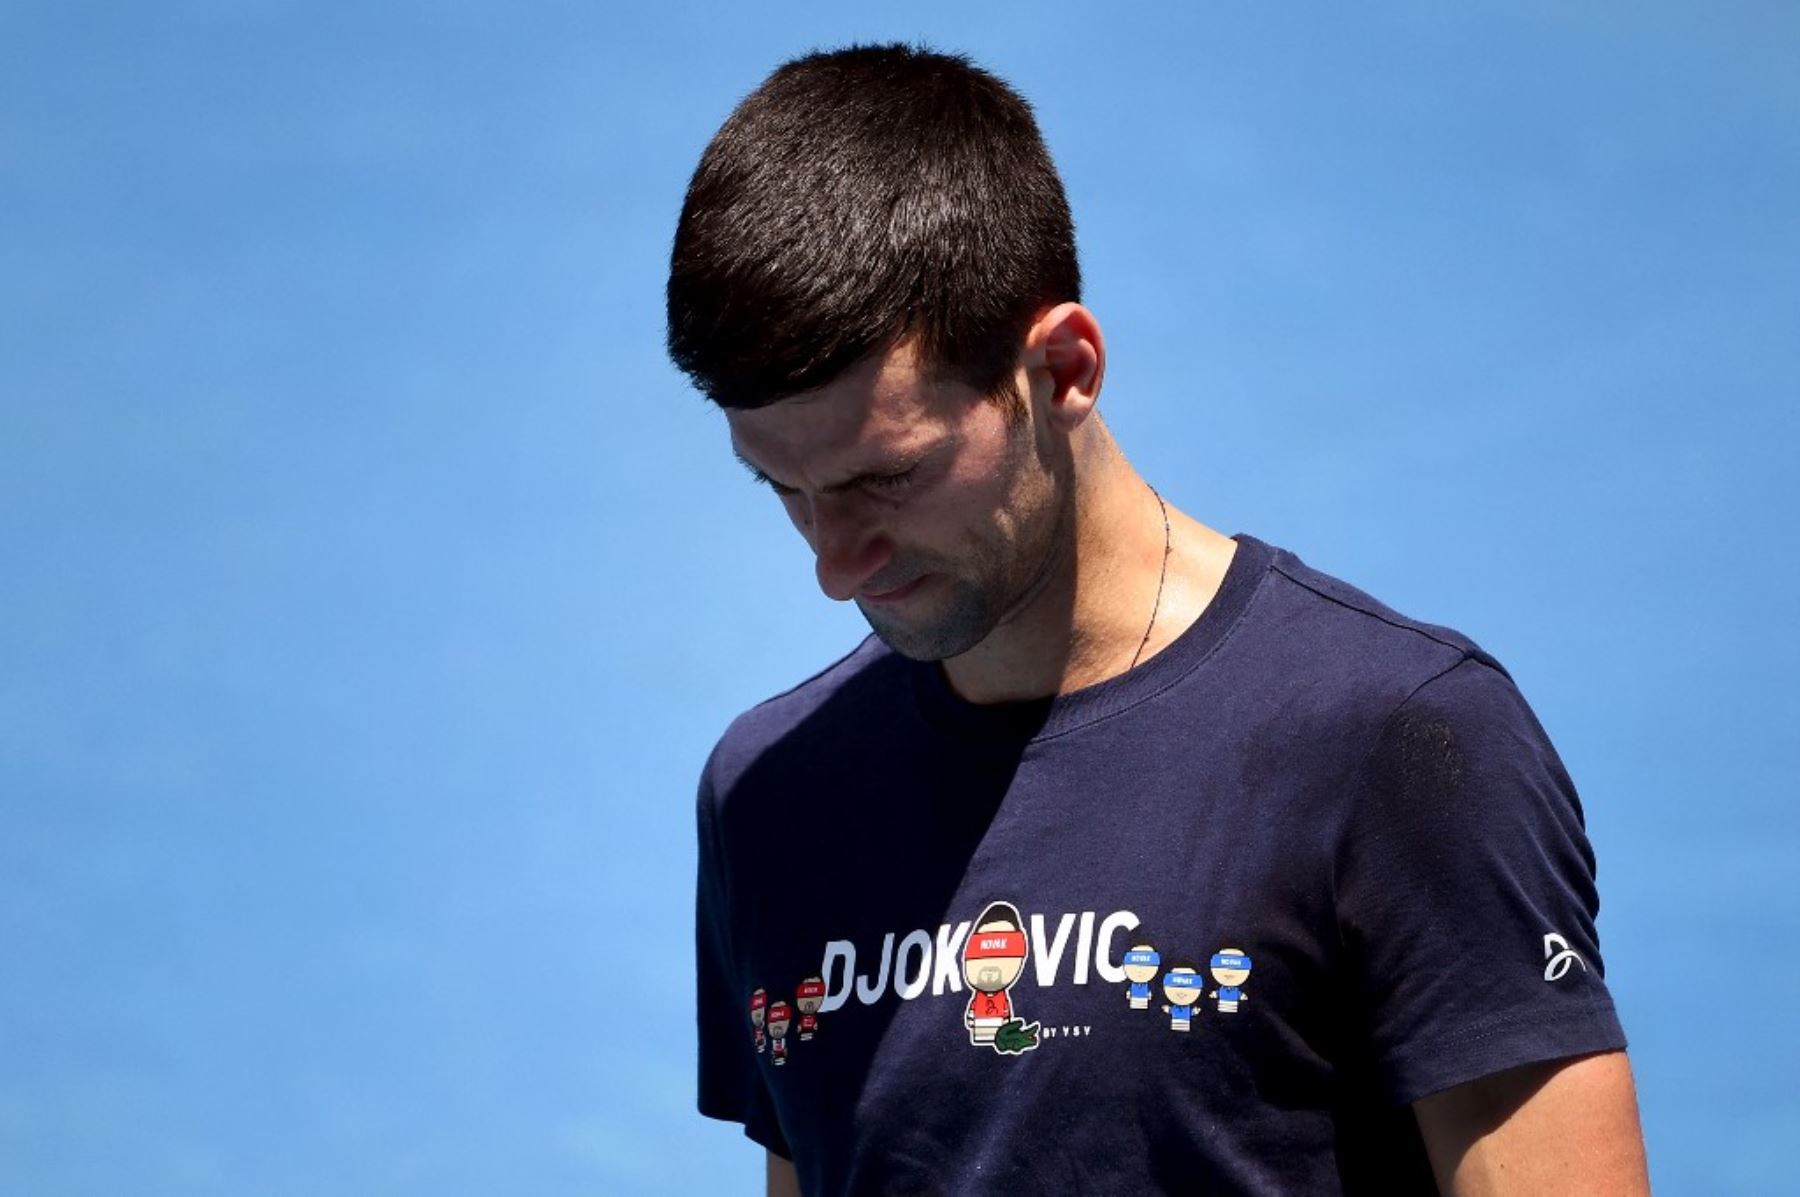 Se desconoce de momento si el tenista serbio Novak Djokovic podrá participar en el torneo del Abierto de Australia, que comienza el lunes.